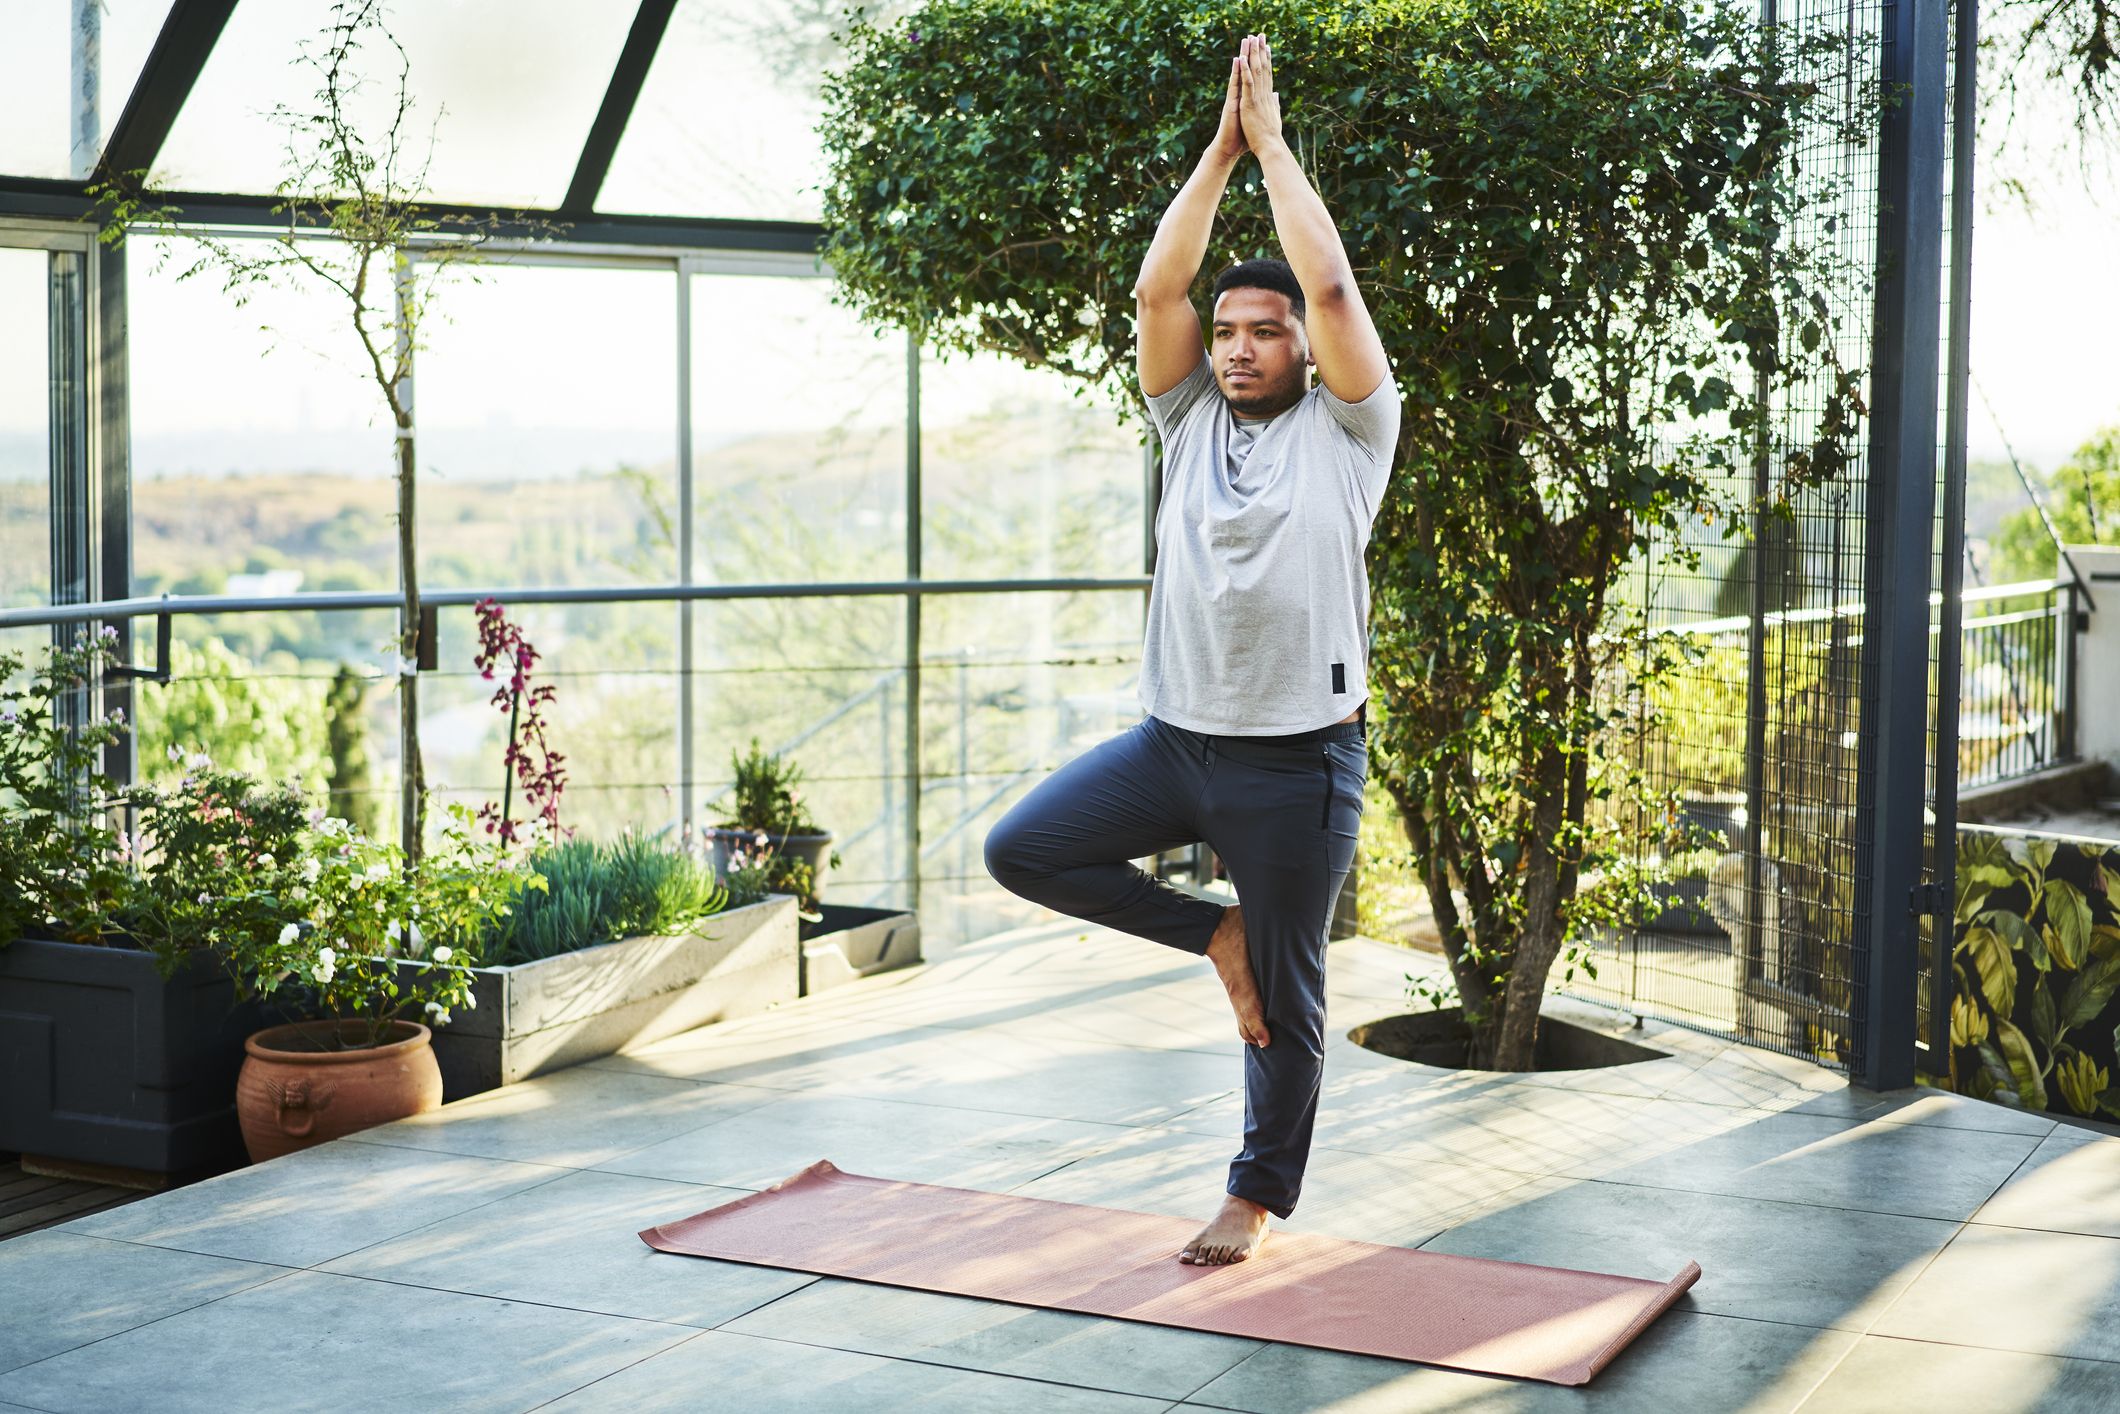 Basic Yoga Poses 15 Yoga poses For Beginners 7pranayamacom